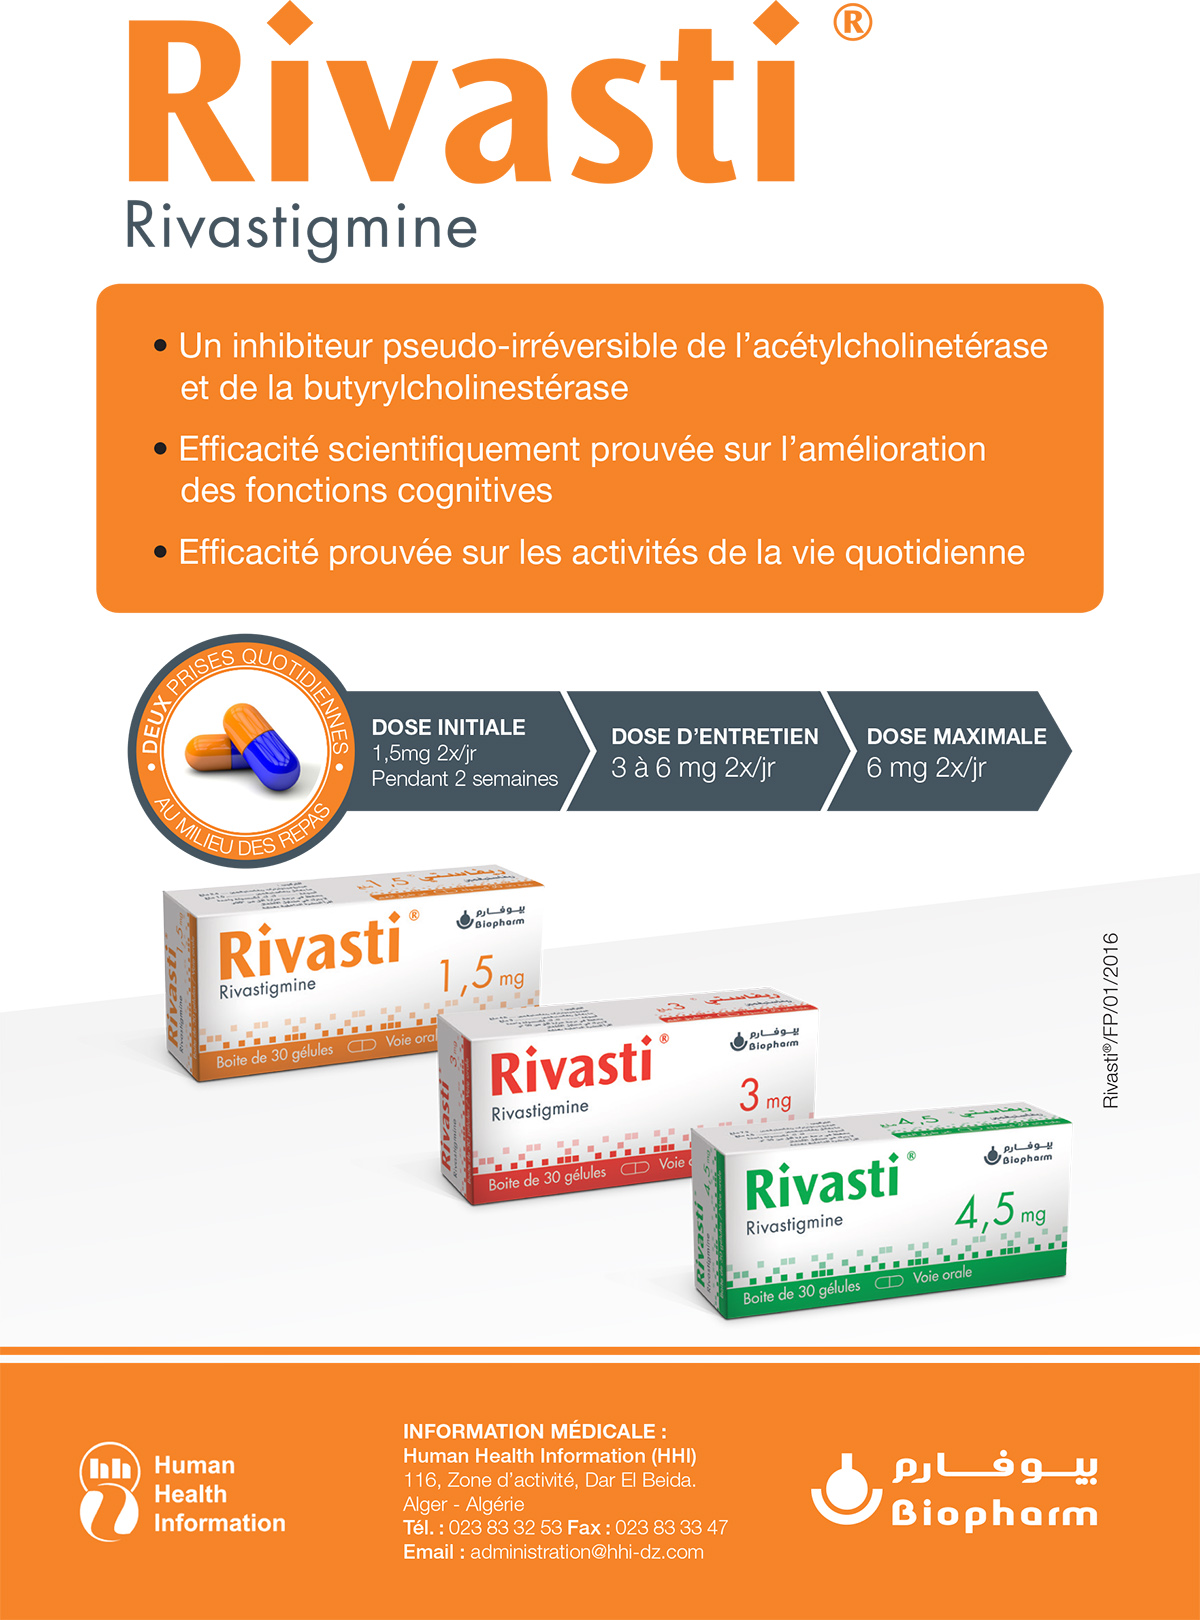 Rivasti ® – Rivastigmine